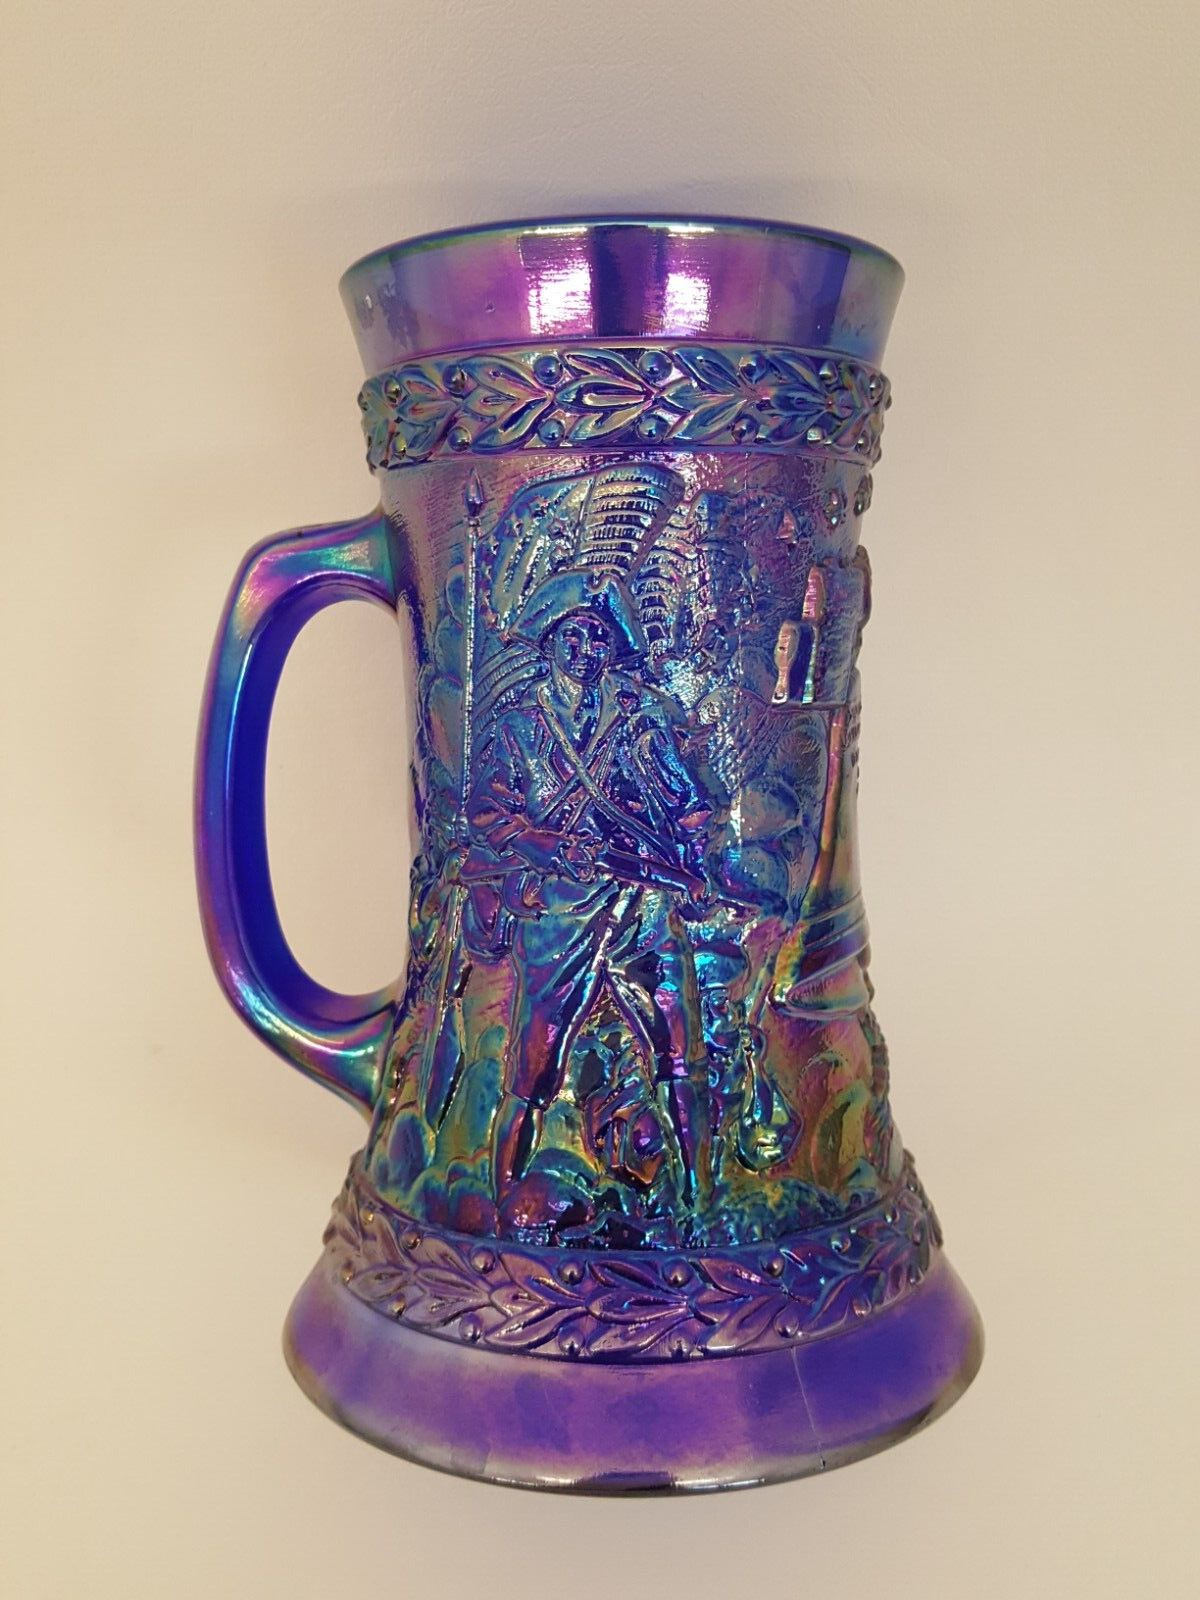 Fenton Bicentennial blue mug stein iridescent glass vintage